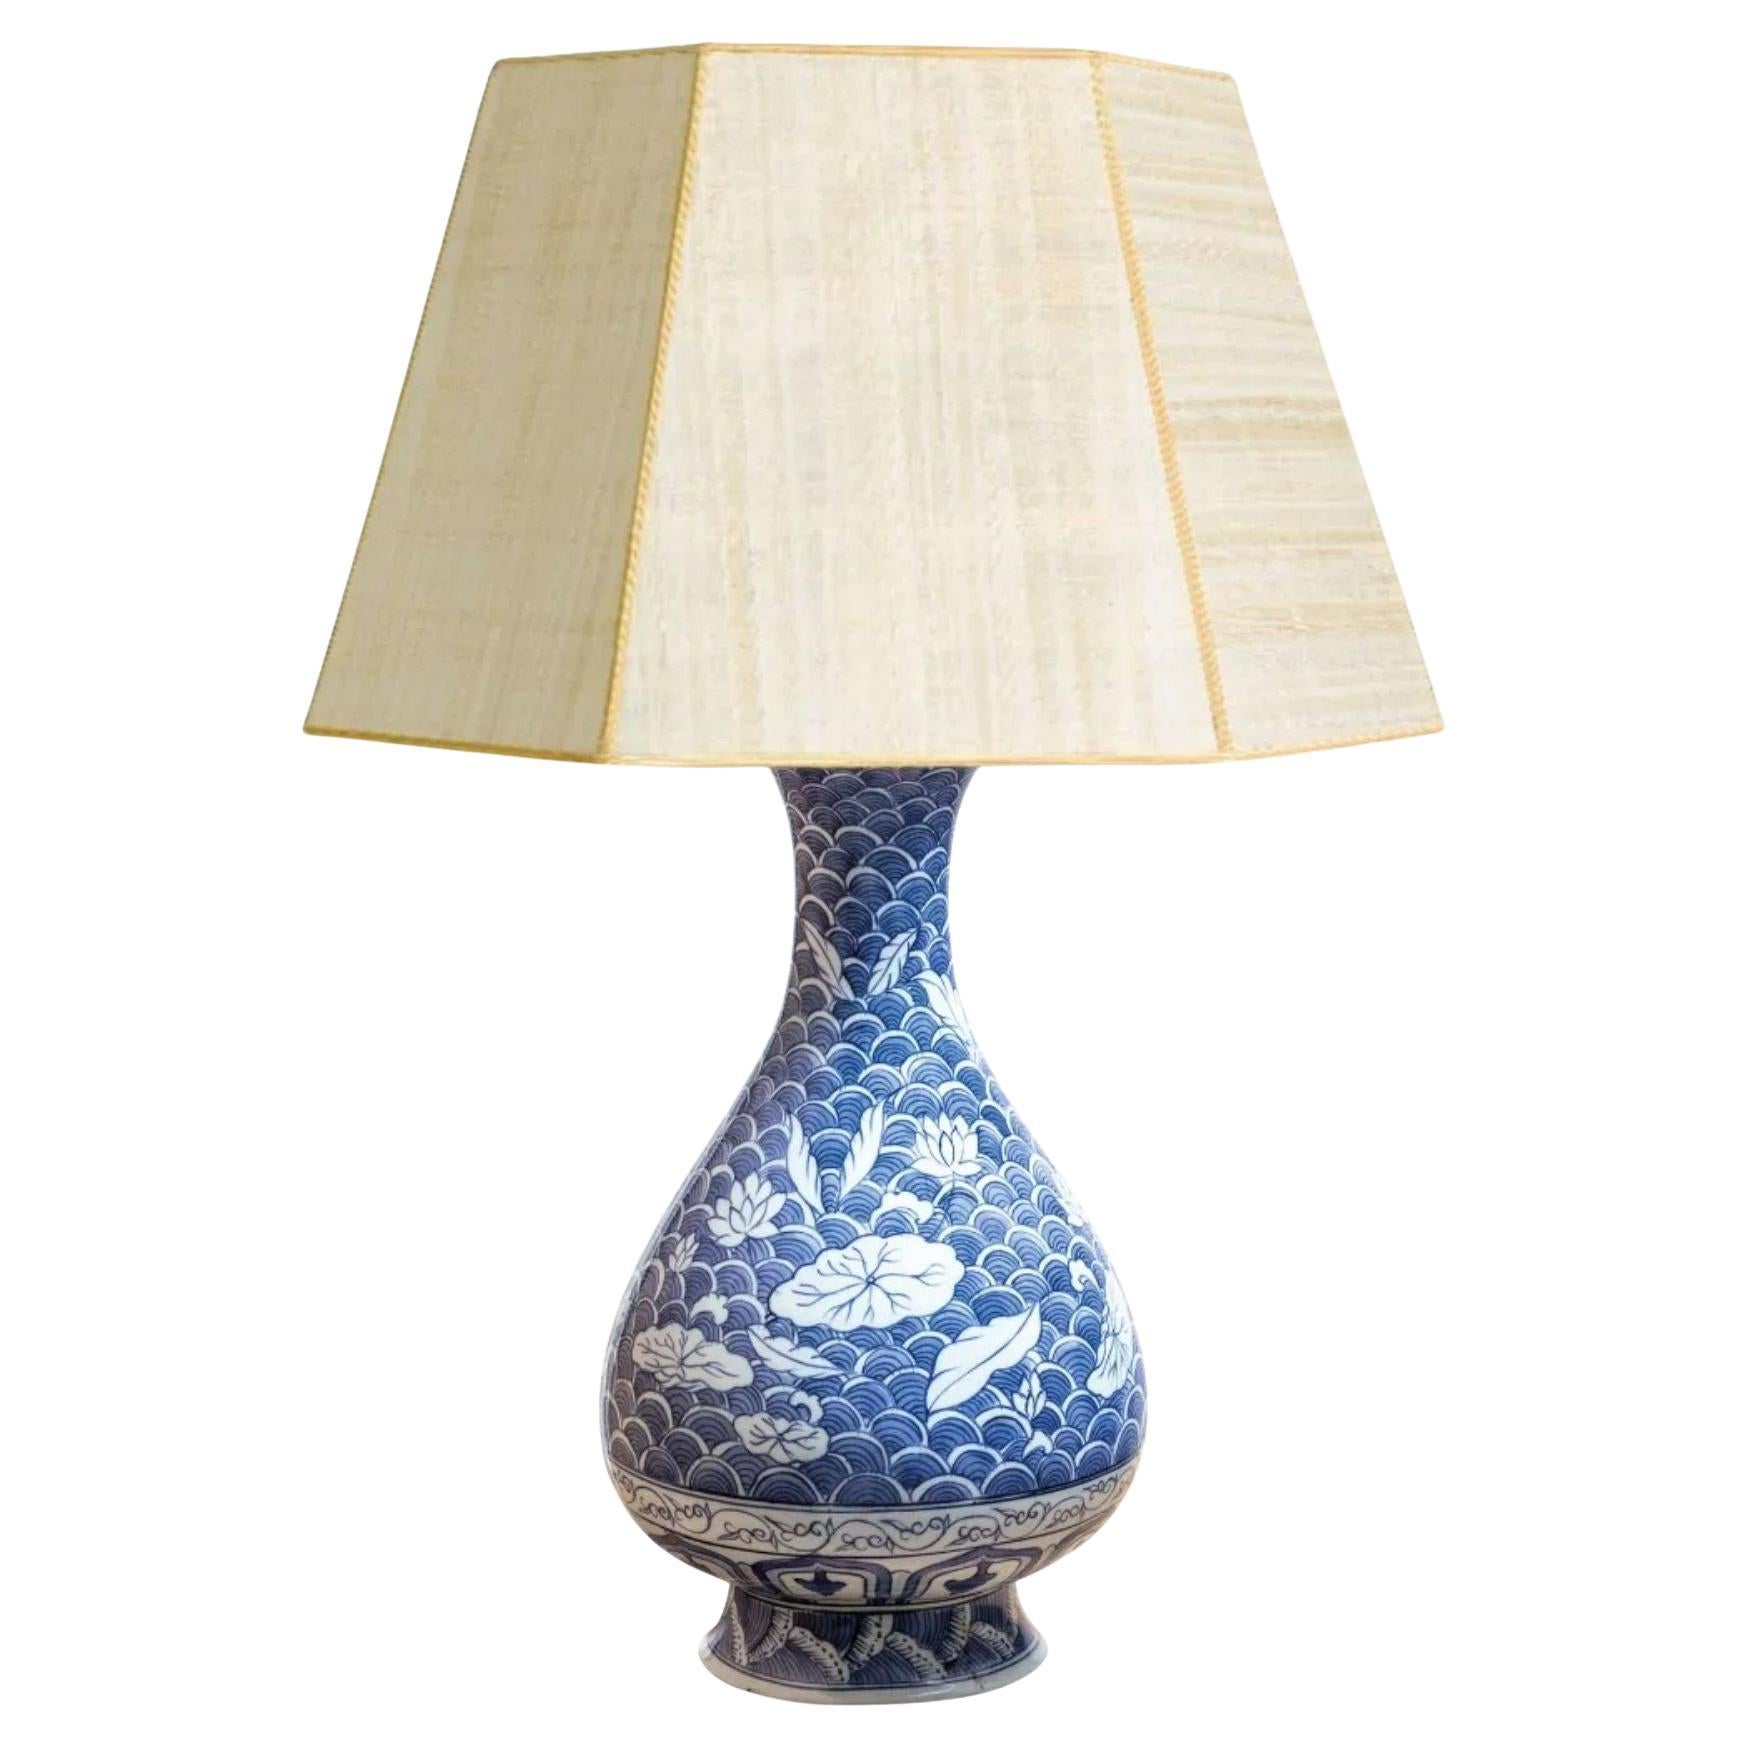 Lampe-vase en porcelaine chinoise bleue et blanche, 19e siècle